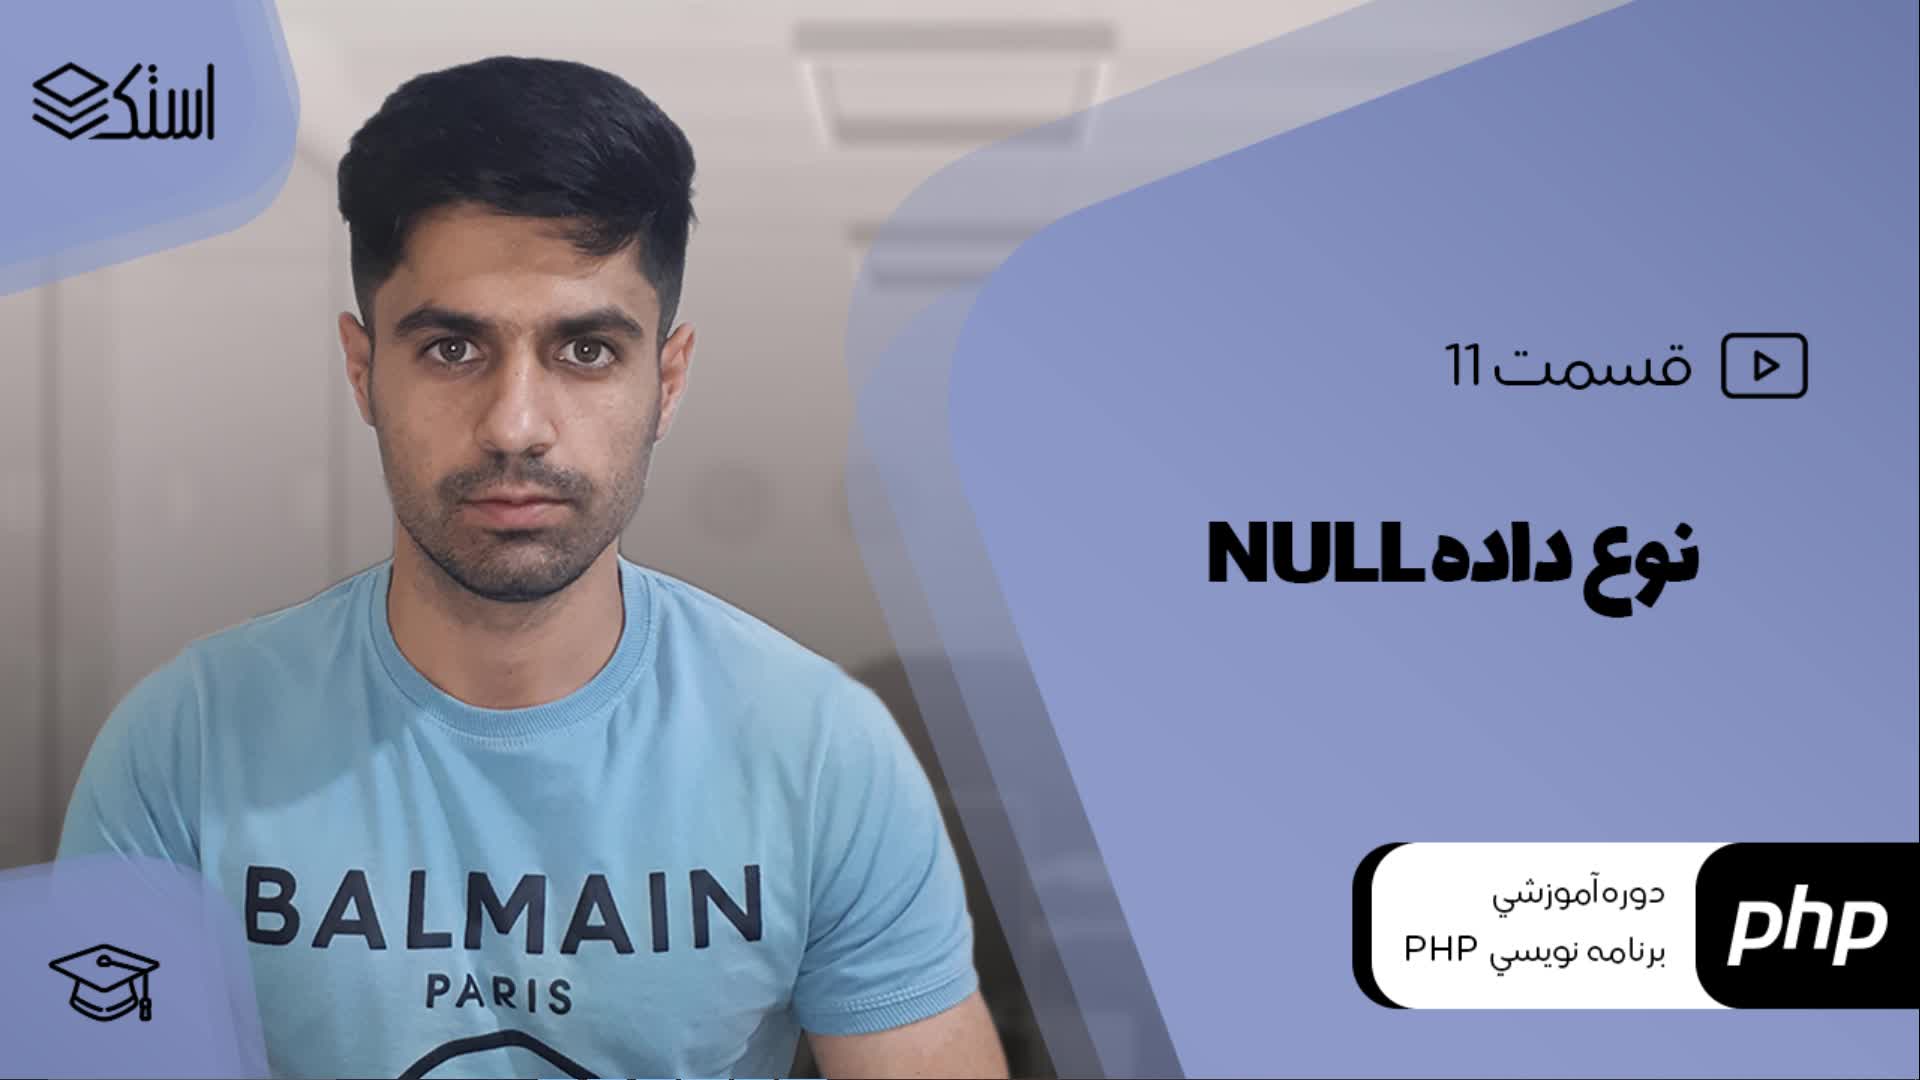 آموزش نوع داده نال (NULL) در زبان برنامه‌نویسی PHP (ویدیو + توضیحات) - قسمت 11 - استک لرن